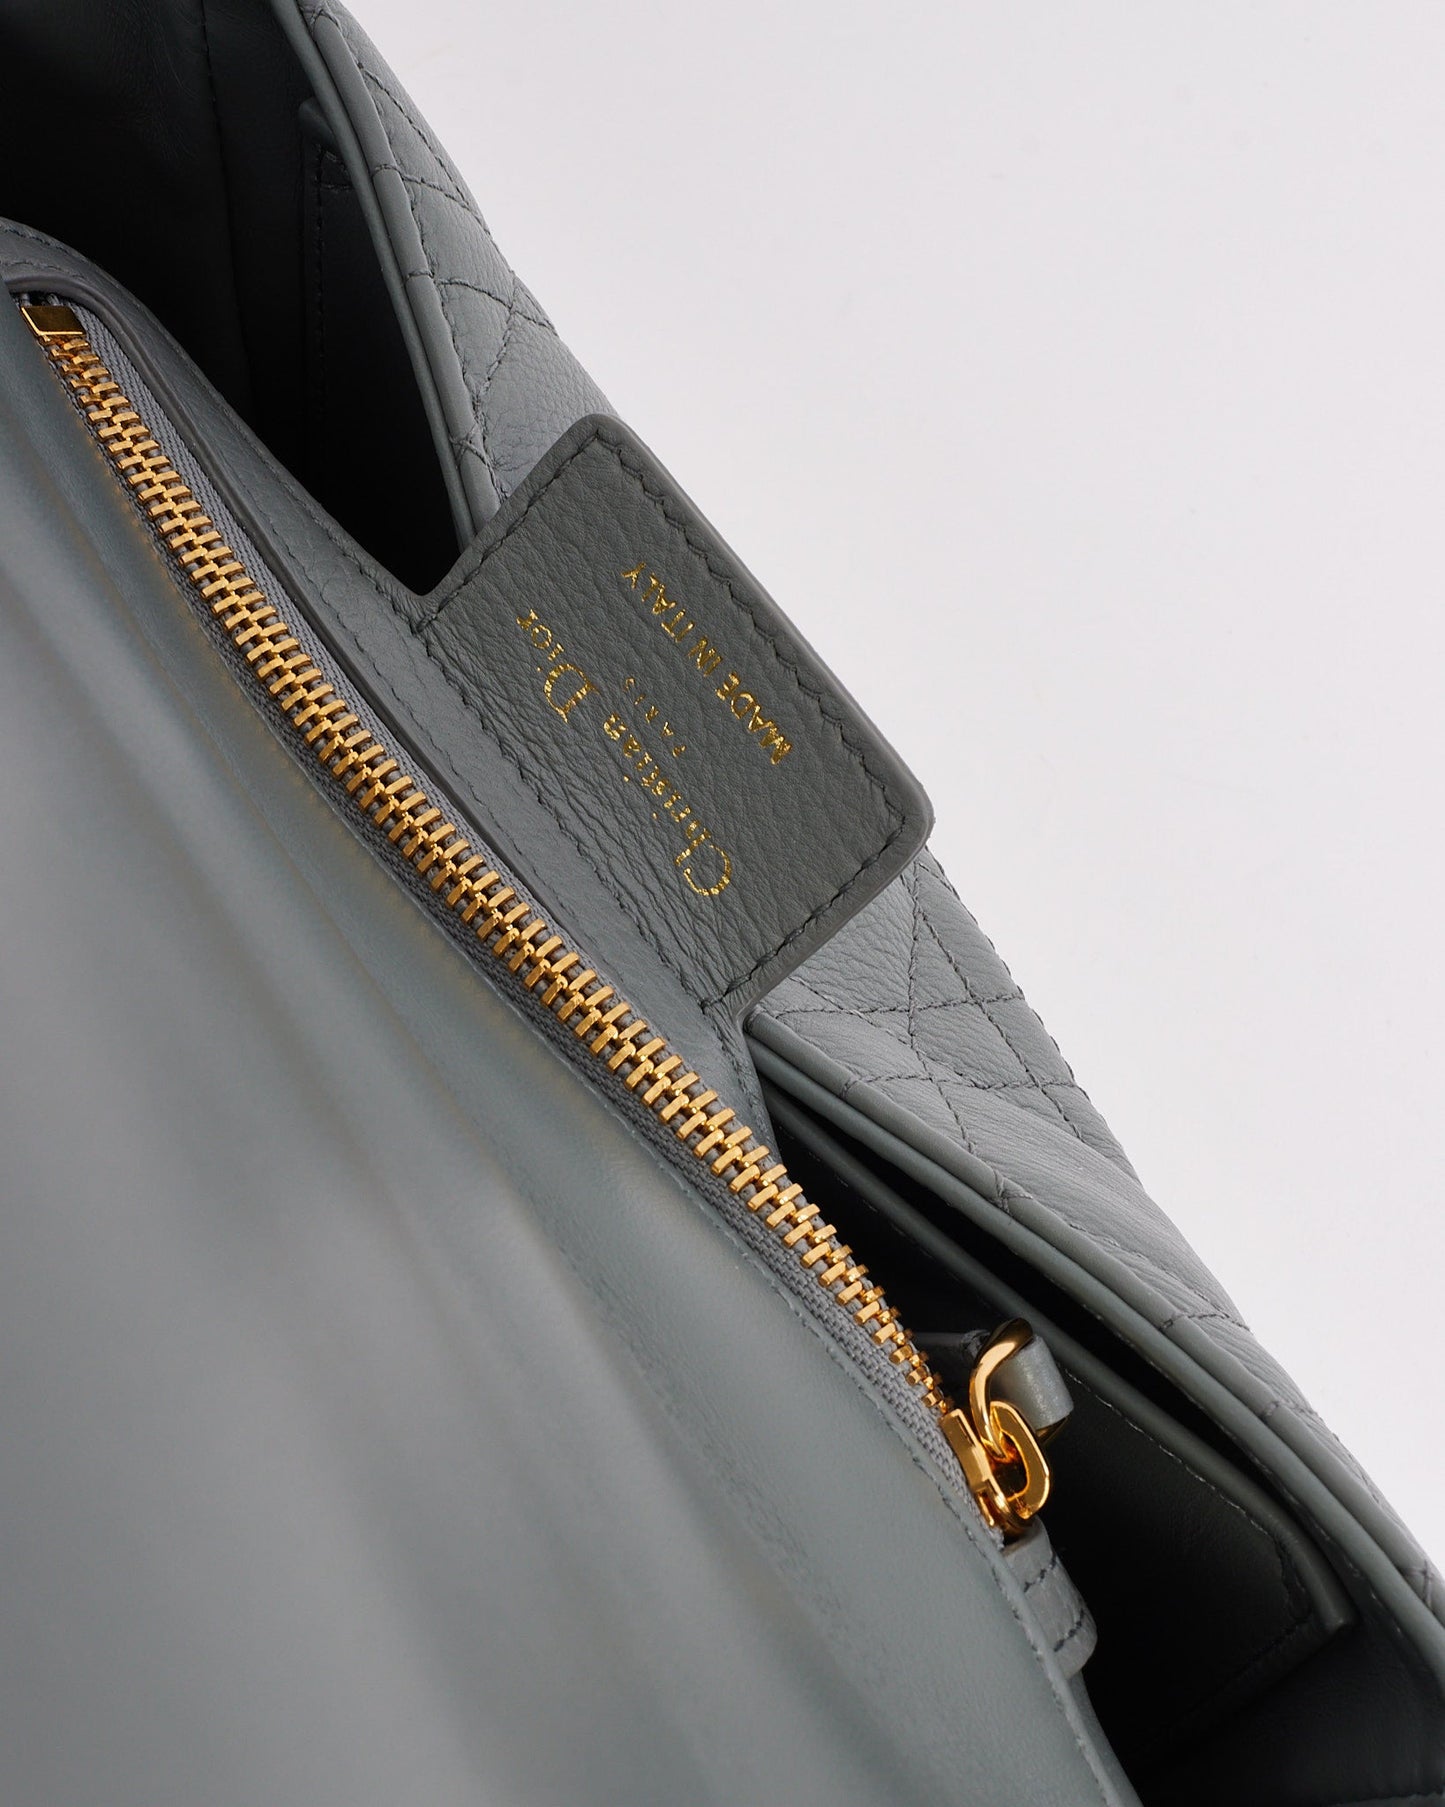 Petit sac Caro en cuir gris (pierre) Dior avec détails dorés